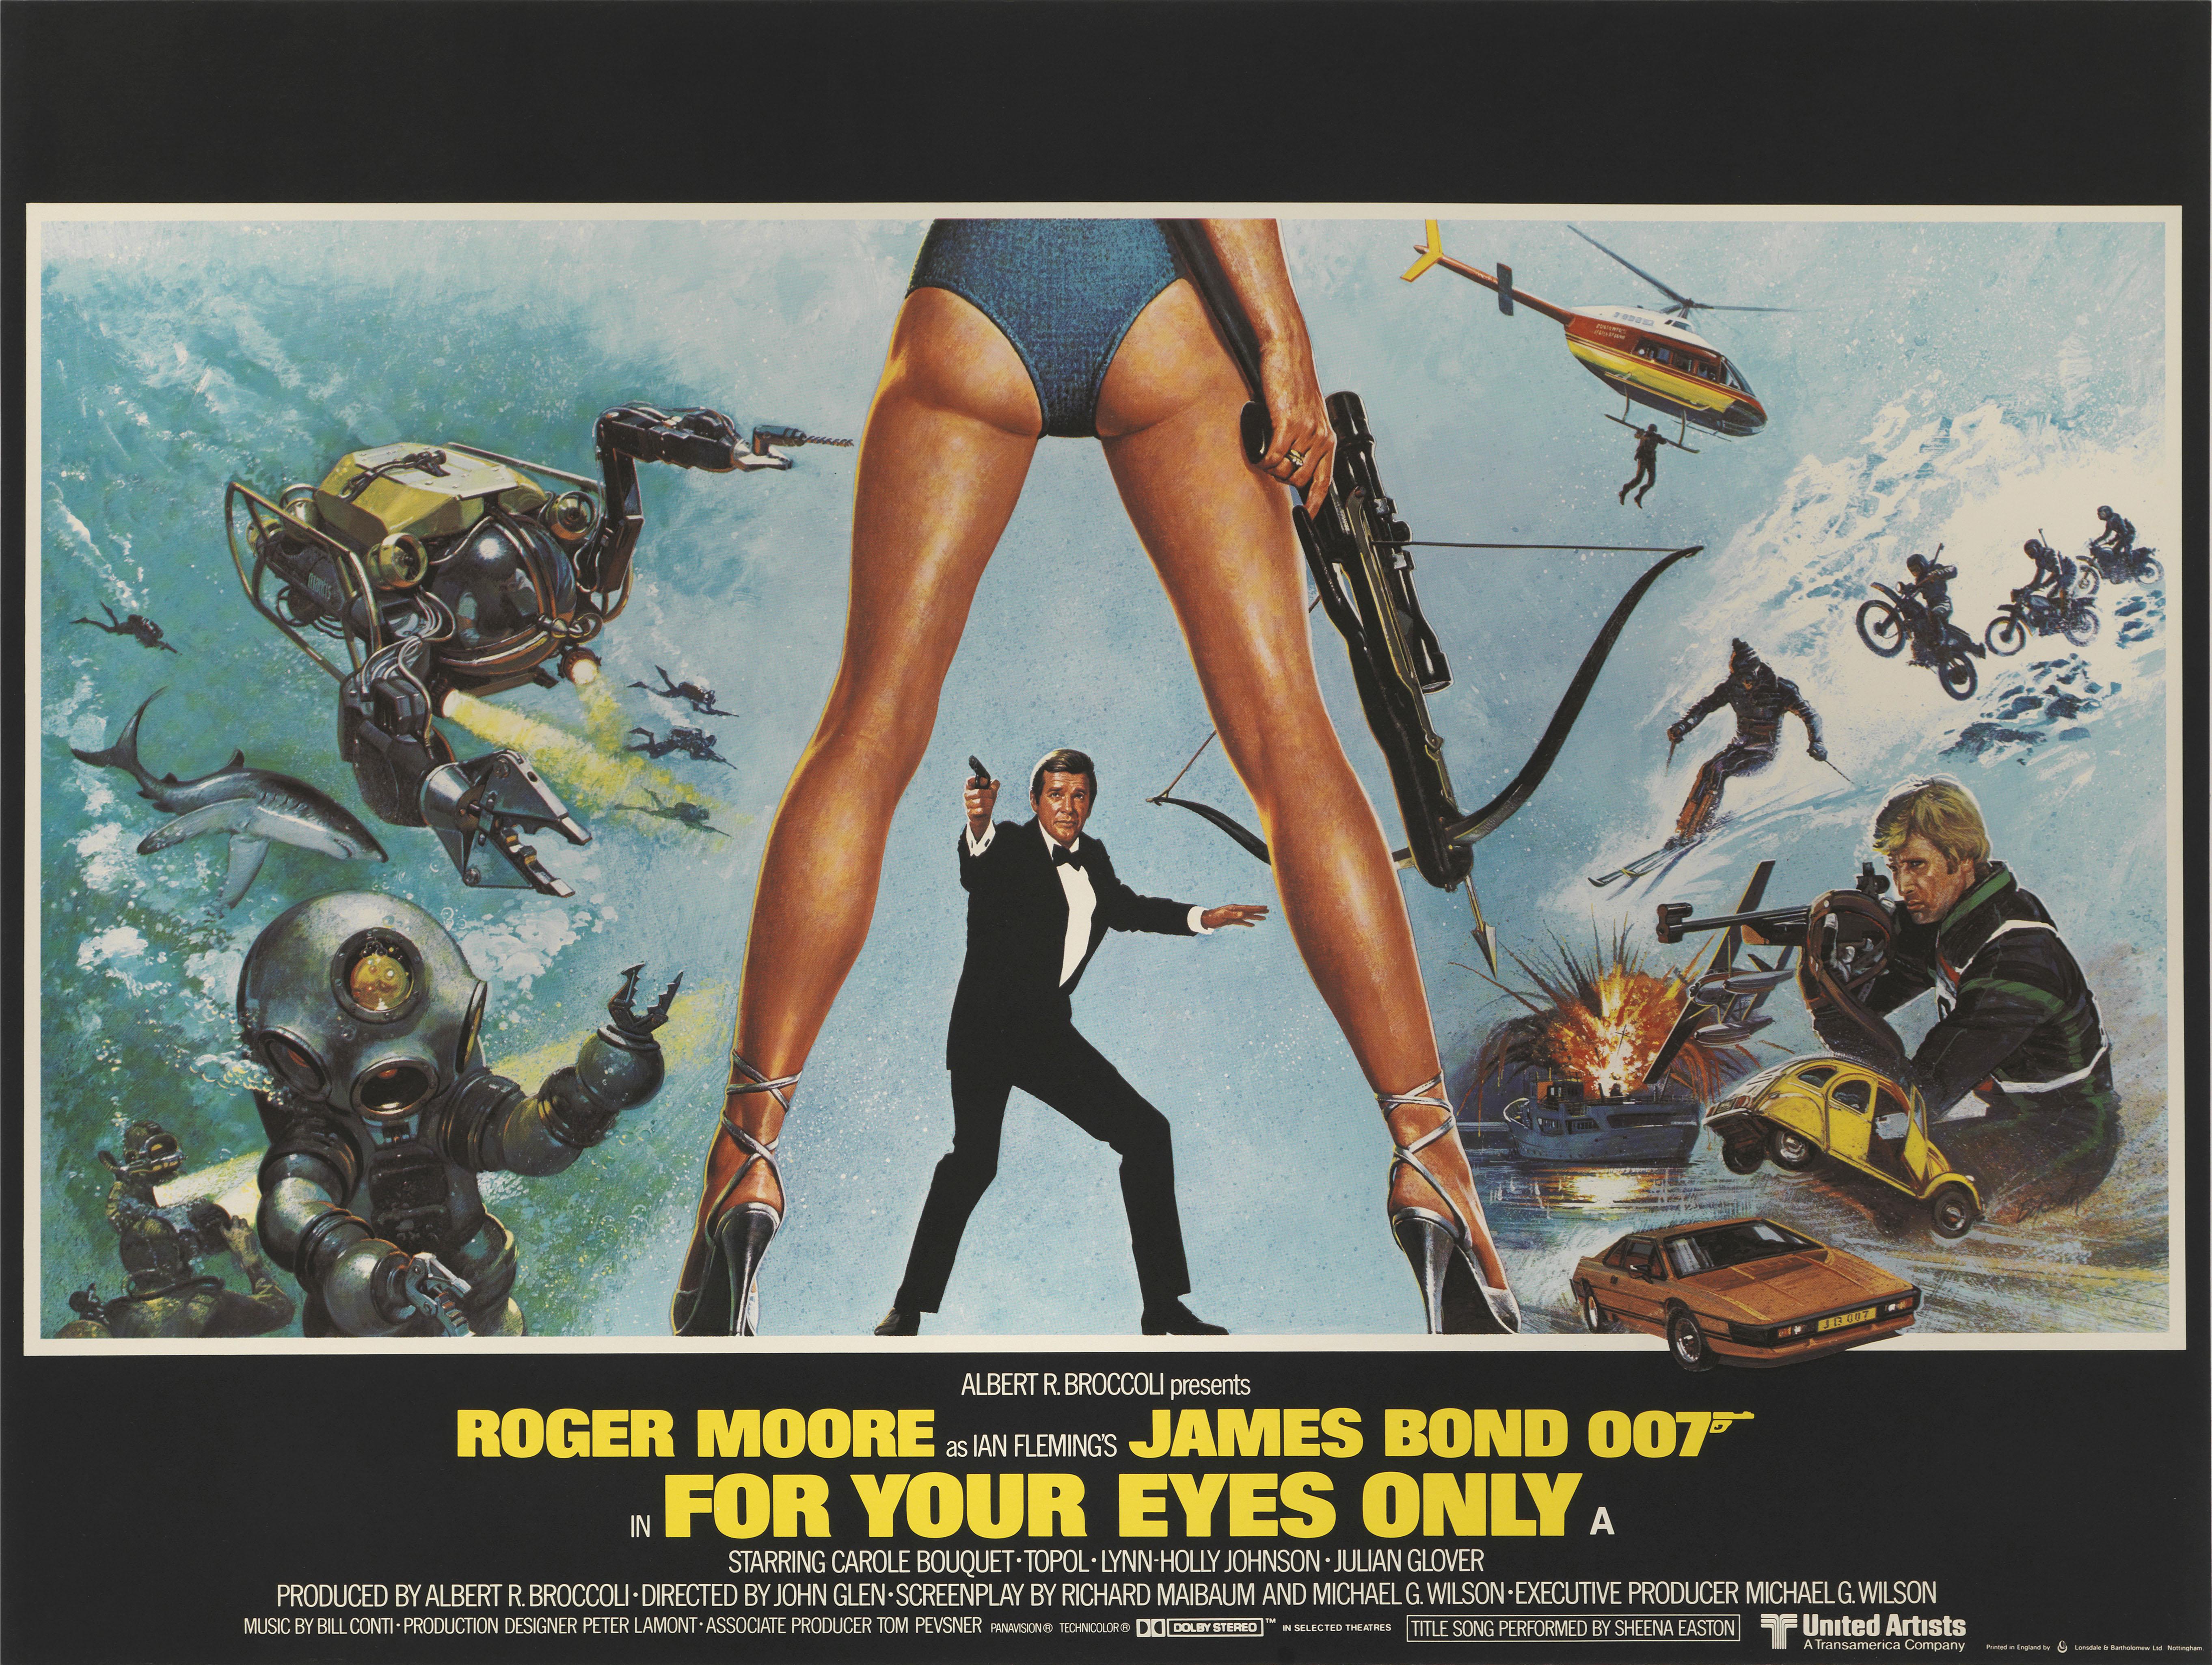 Originales britisches Filmplakat für den James-Bond-Film For Your Eyes Only von 1981.
Dies war der zwölfte Film der James-Bond-Reihe, der von Eon Productions produziert wurde, und der fünfte mit Roger Moore in der Rolle des James Bond. Der Film war